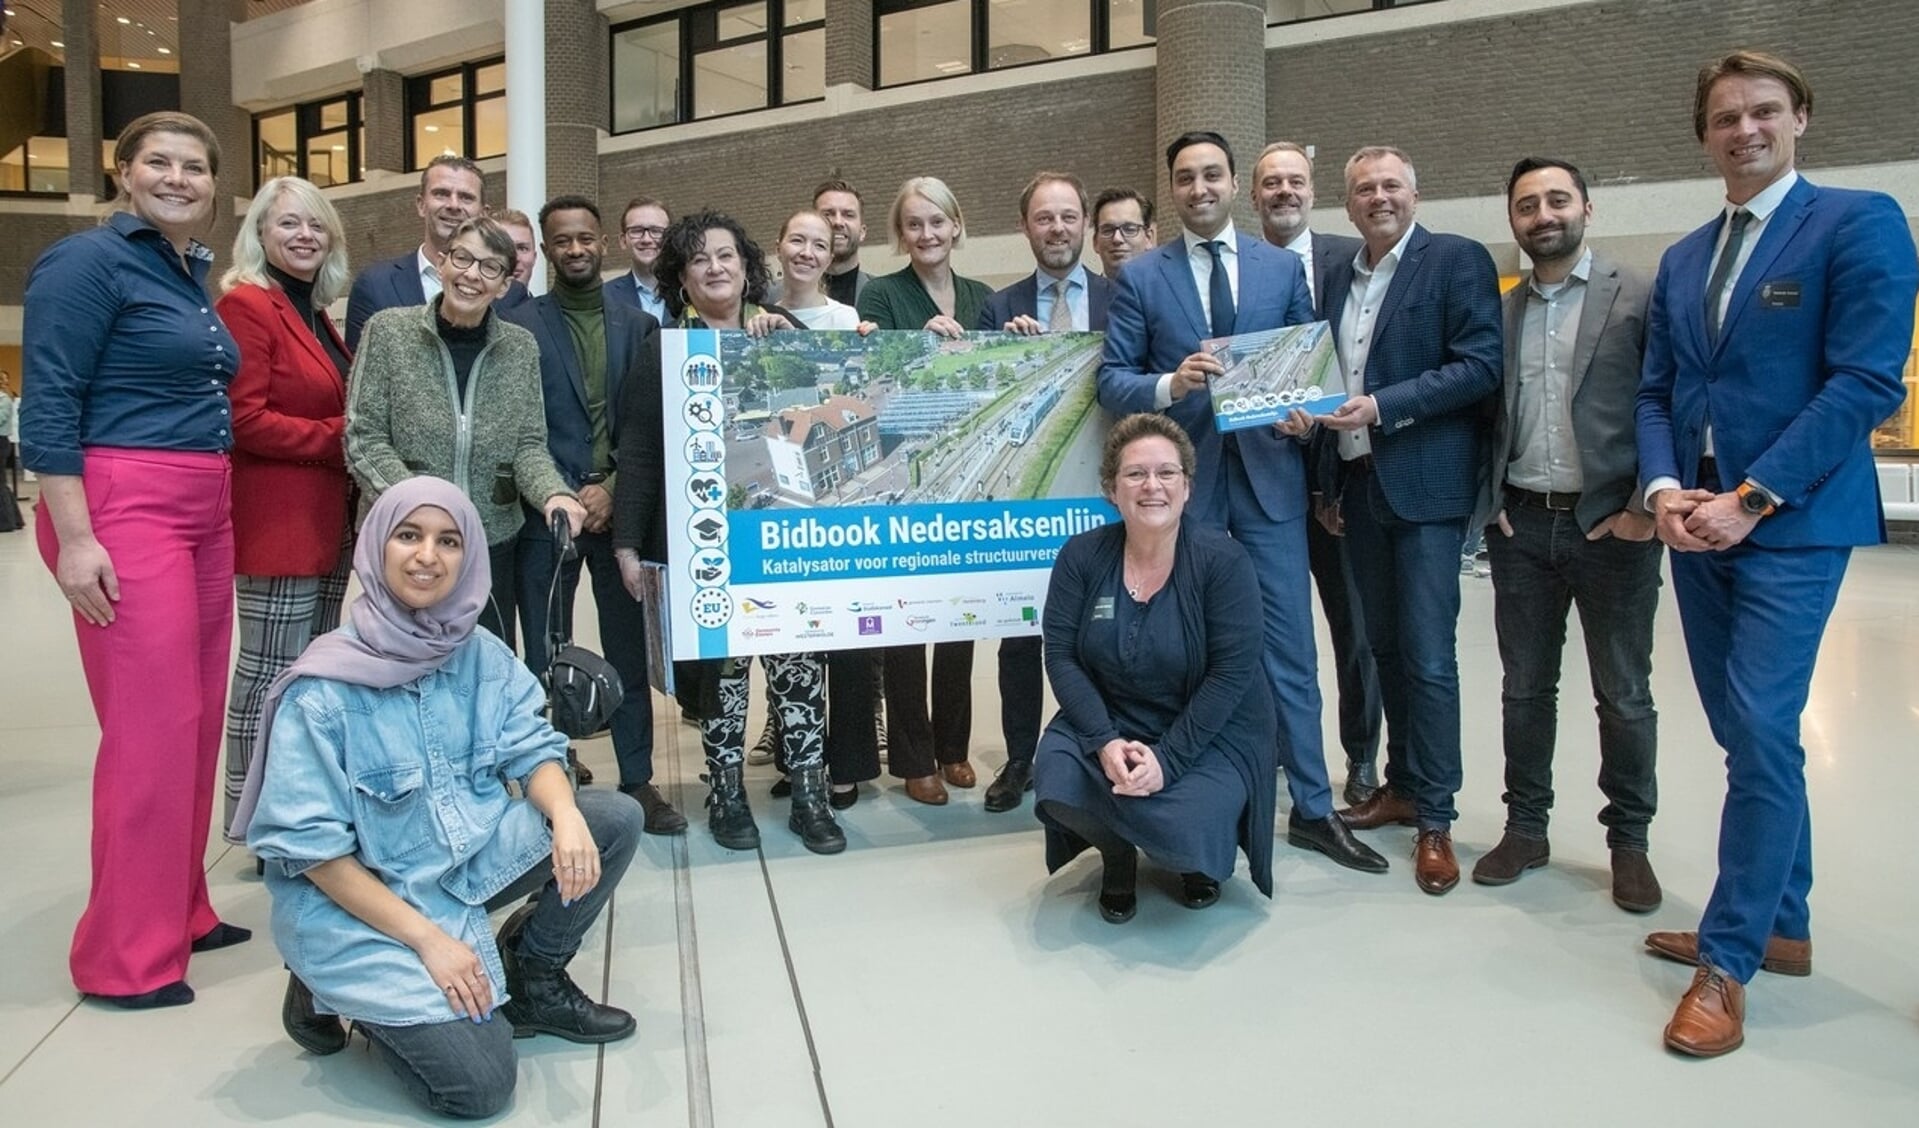 De delegatie uit Noordoost-Nederland met de leden van de Tweede Kamer. (foto: provincie Drenthe)